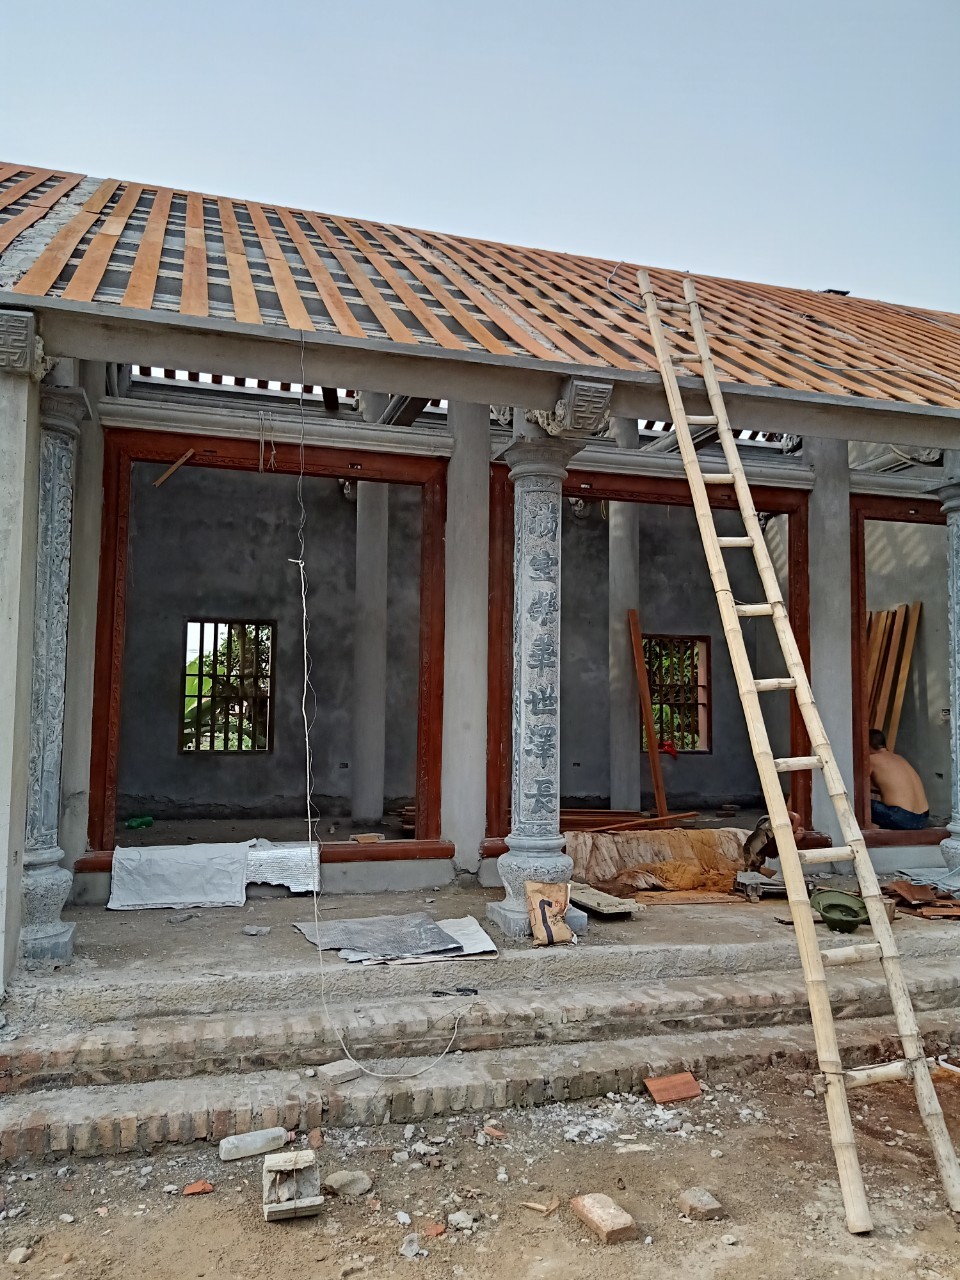 Xây dựng nhà 5 gian bê tông giả gỗ ở Đoàn Đào – Phù Cừ - Hưng Yên ...